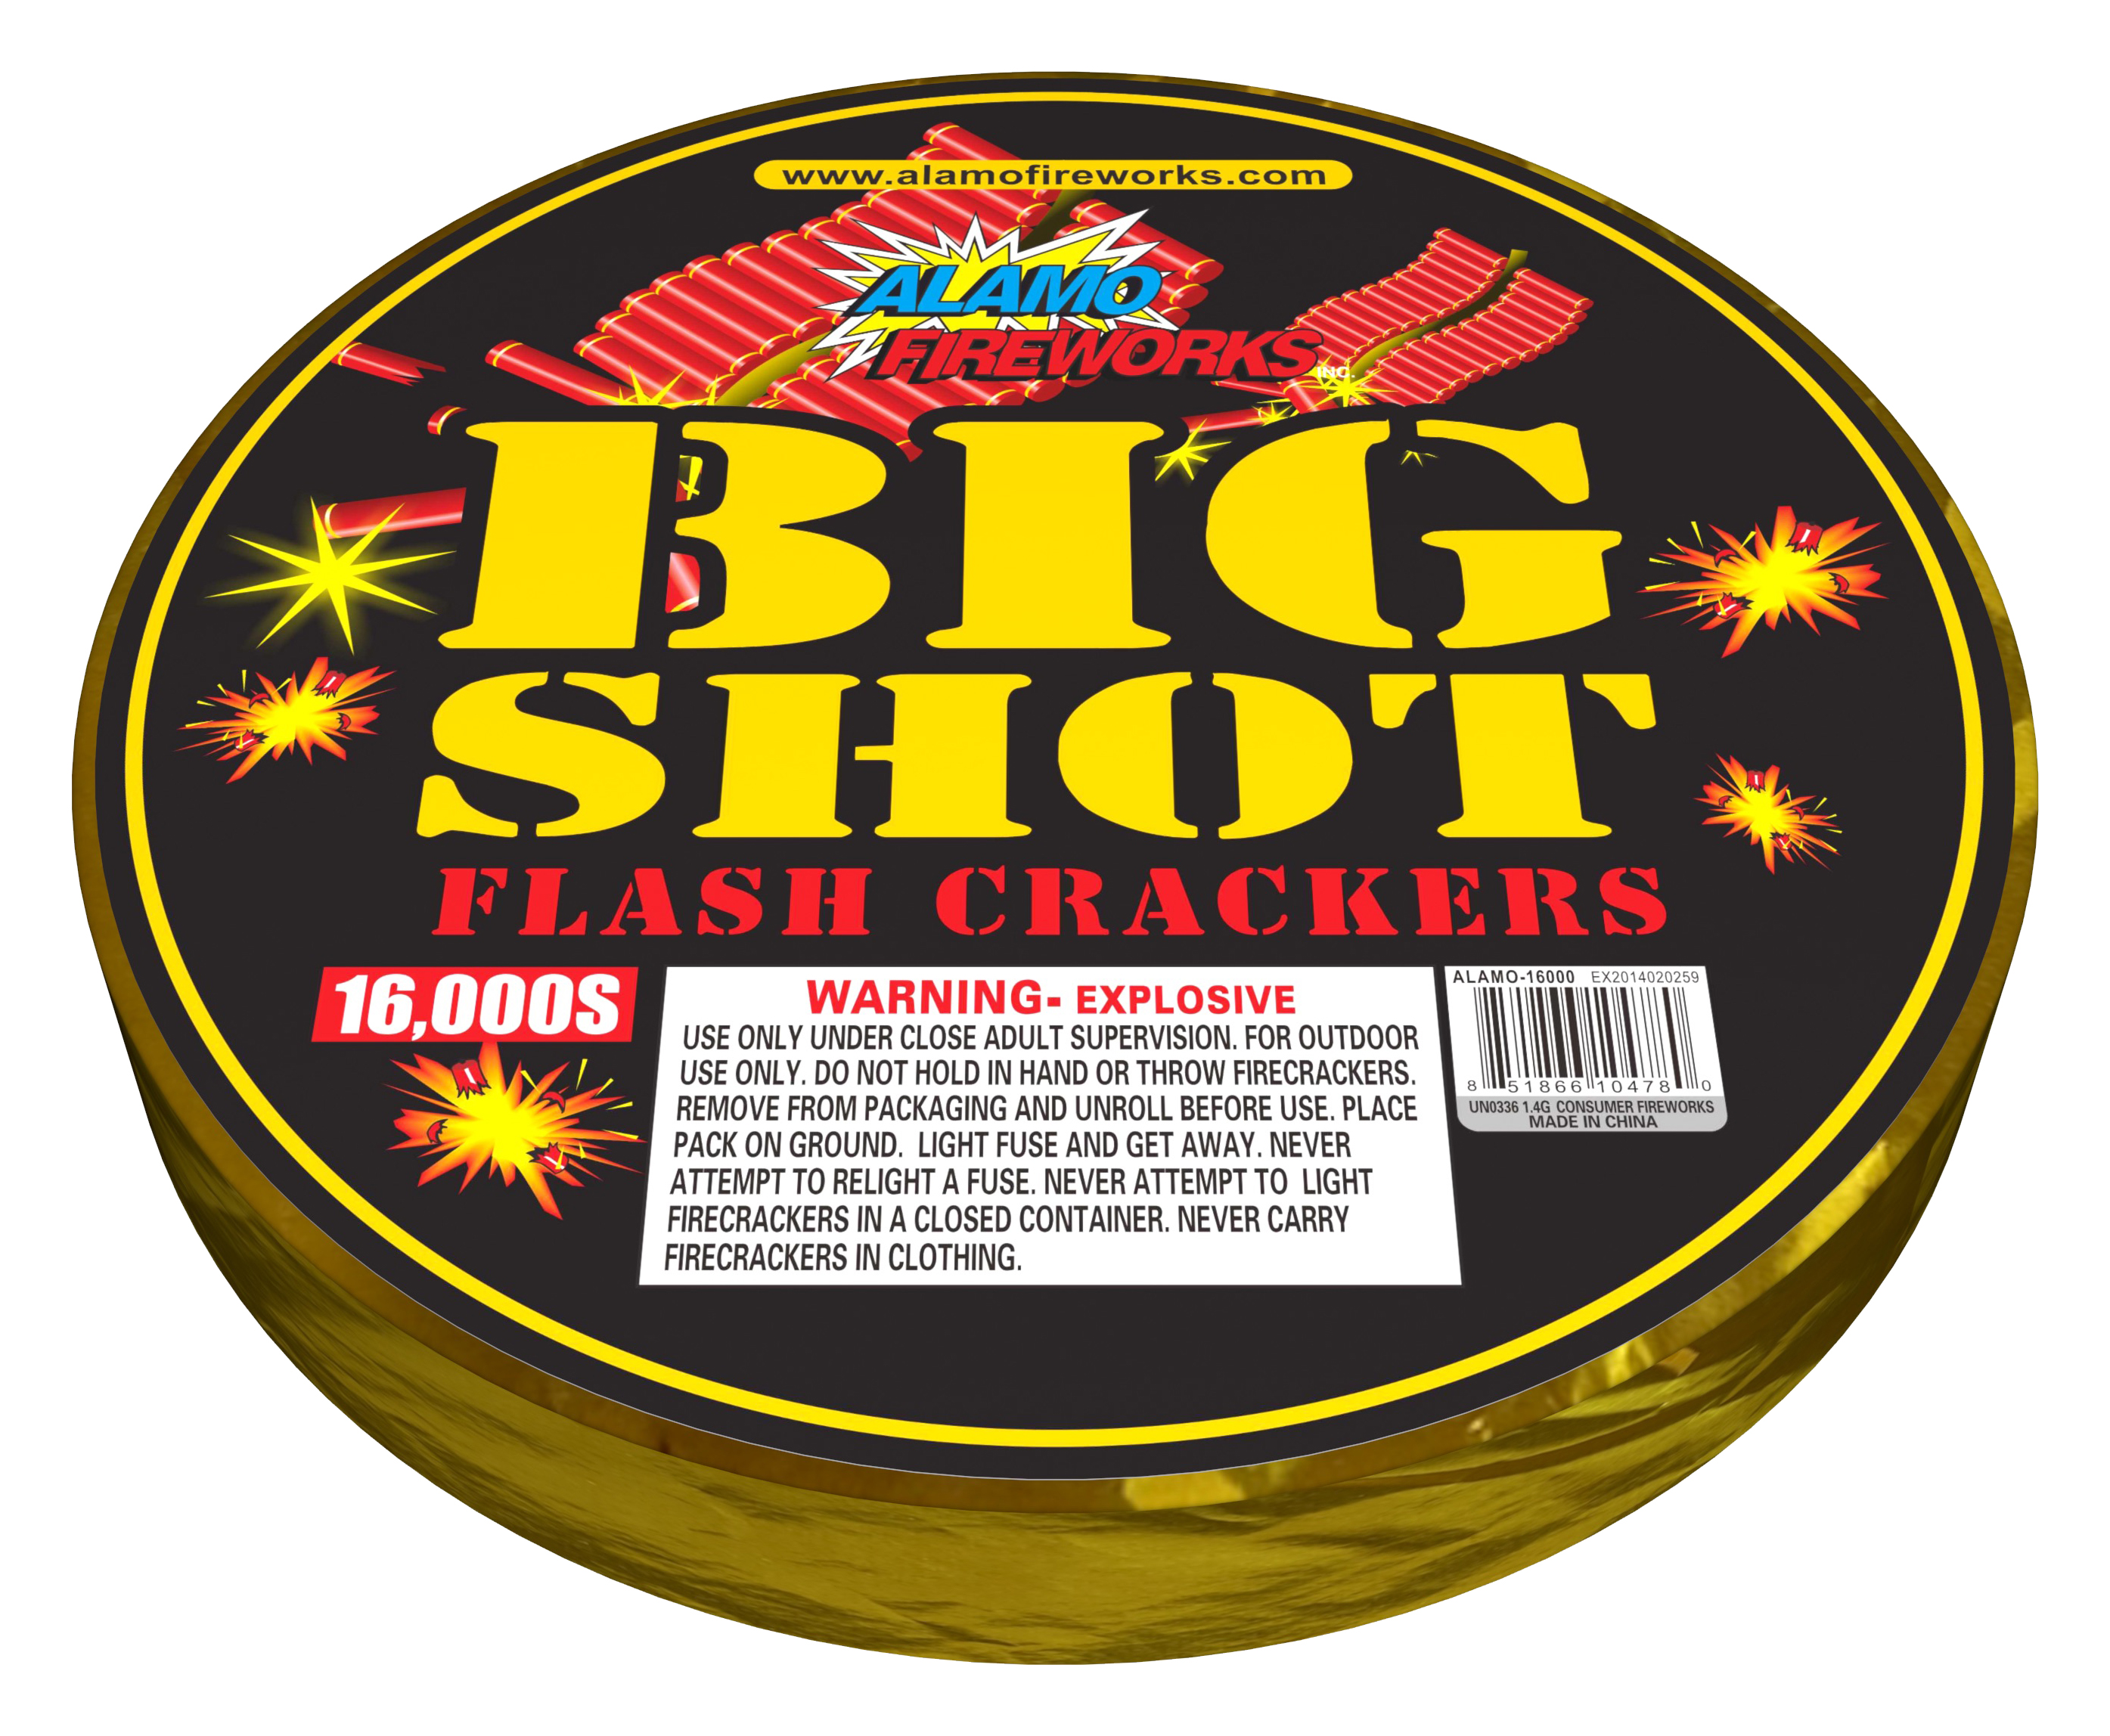 4040. 16,000S Big Shot Flash Crackers